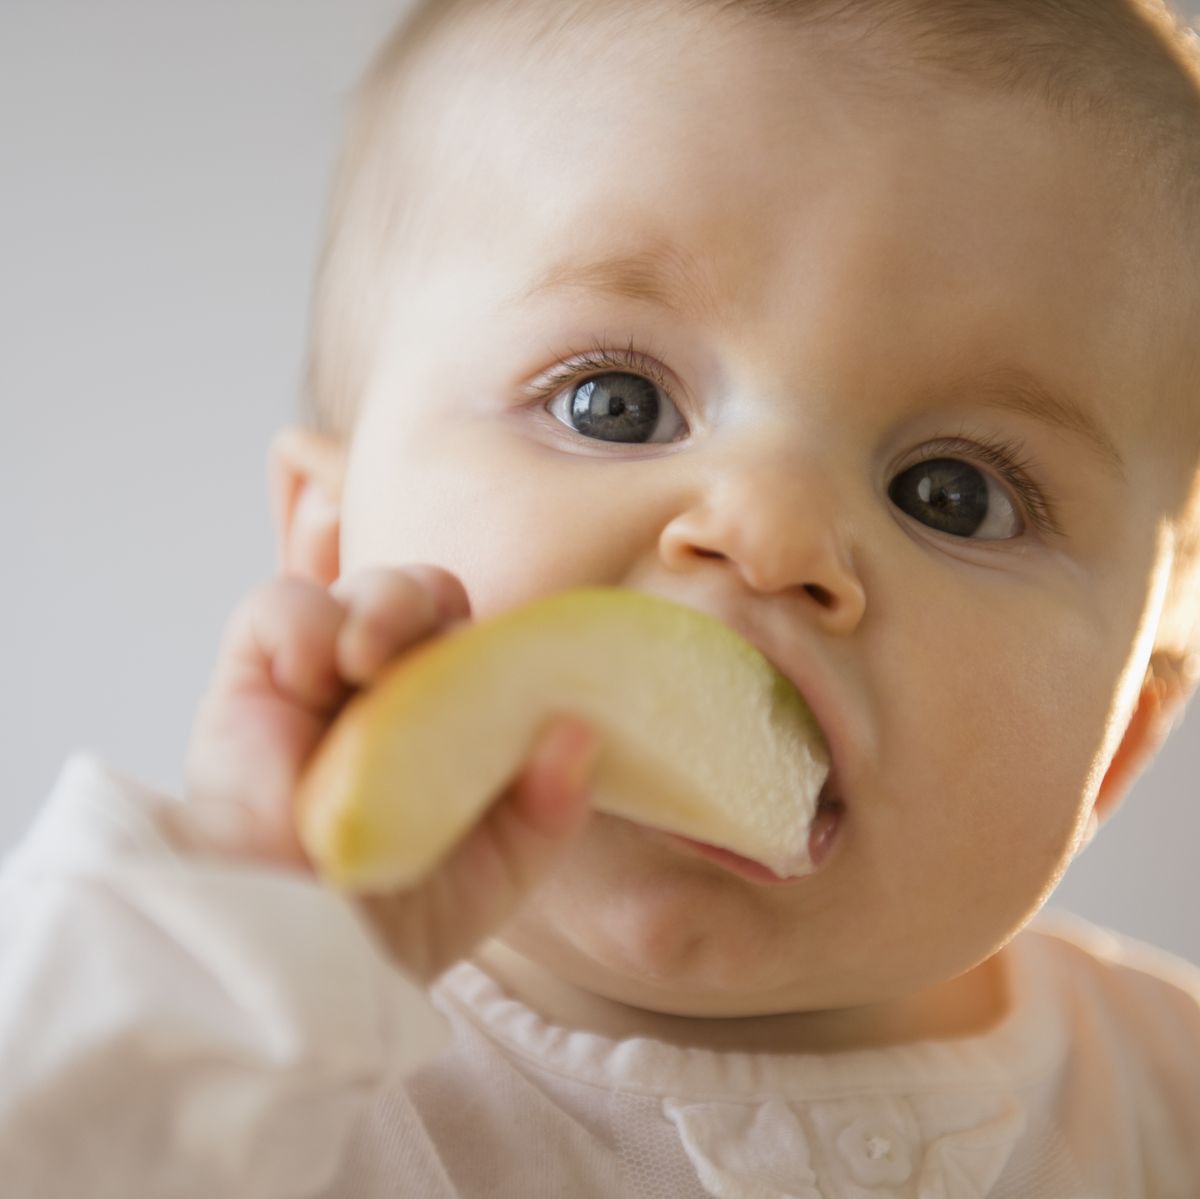 Alimentación : ¿Qué frutas puede comer el bebé?